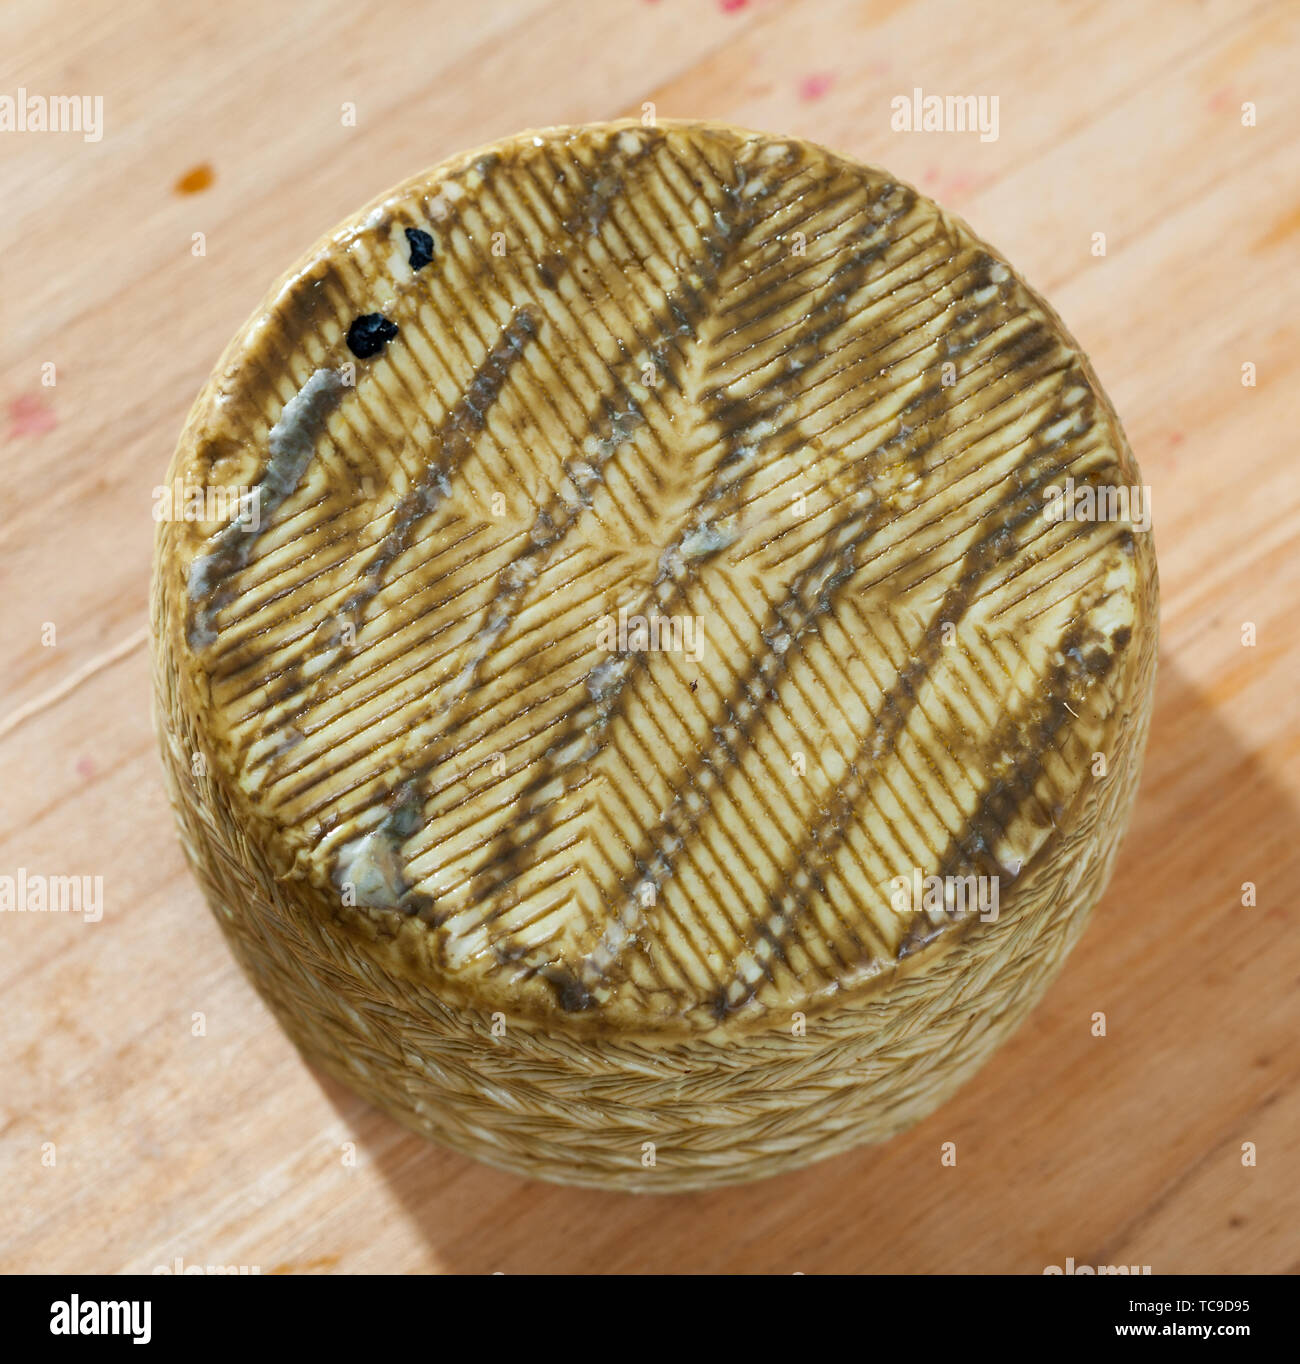 Tutta la ruota dello spagnolo misto vaccino e latte di capra formaggio indurito (mezcla) su una superficie di legno Foto Stock